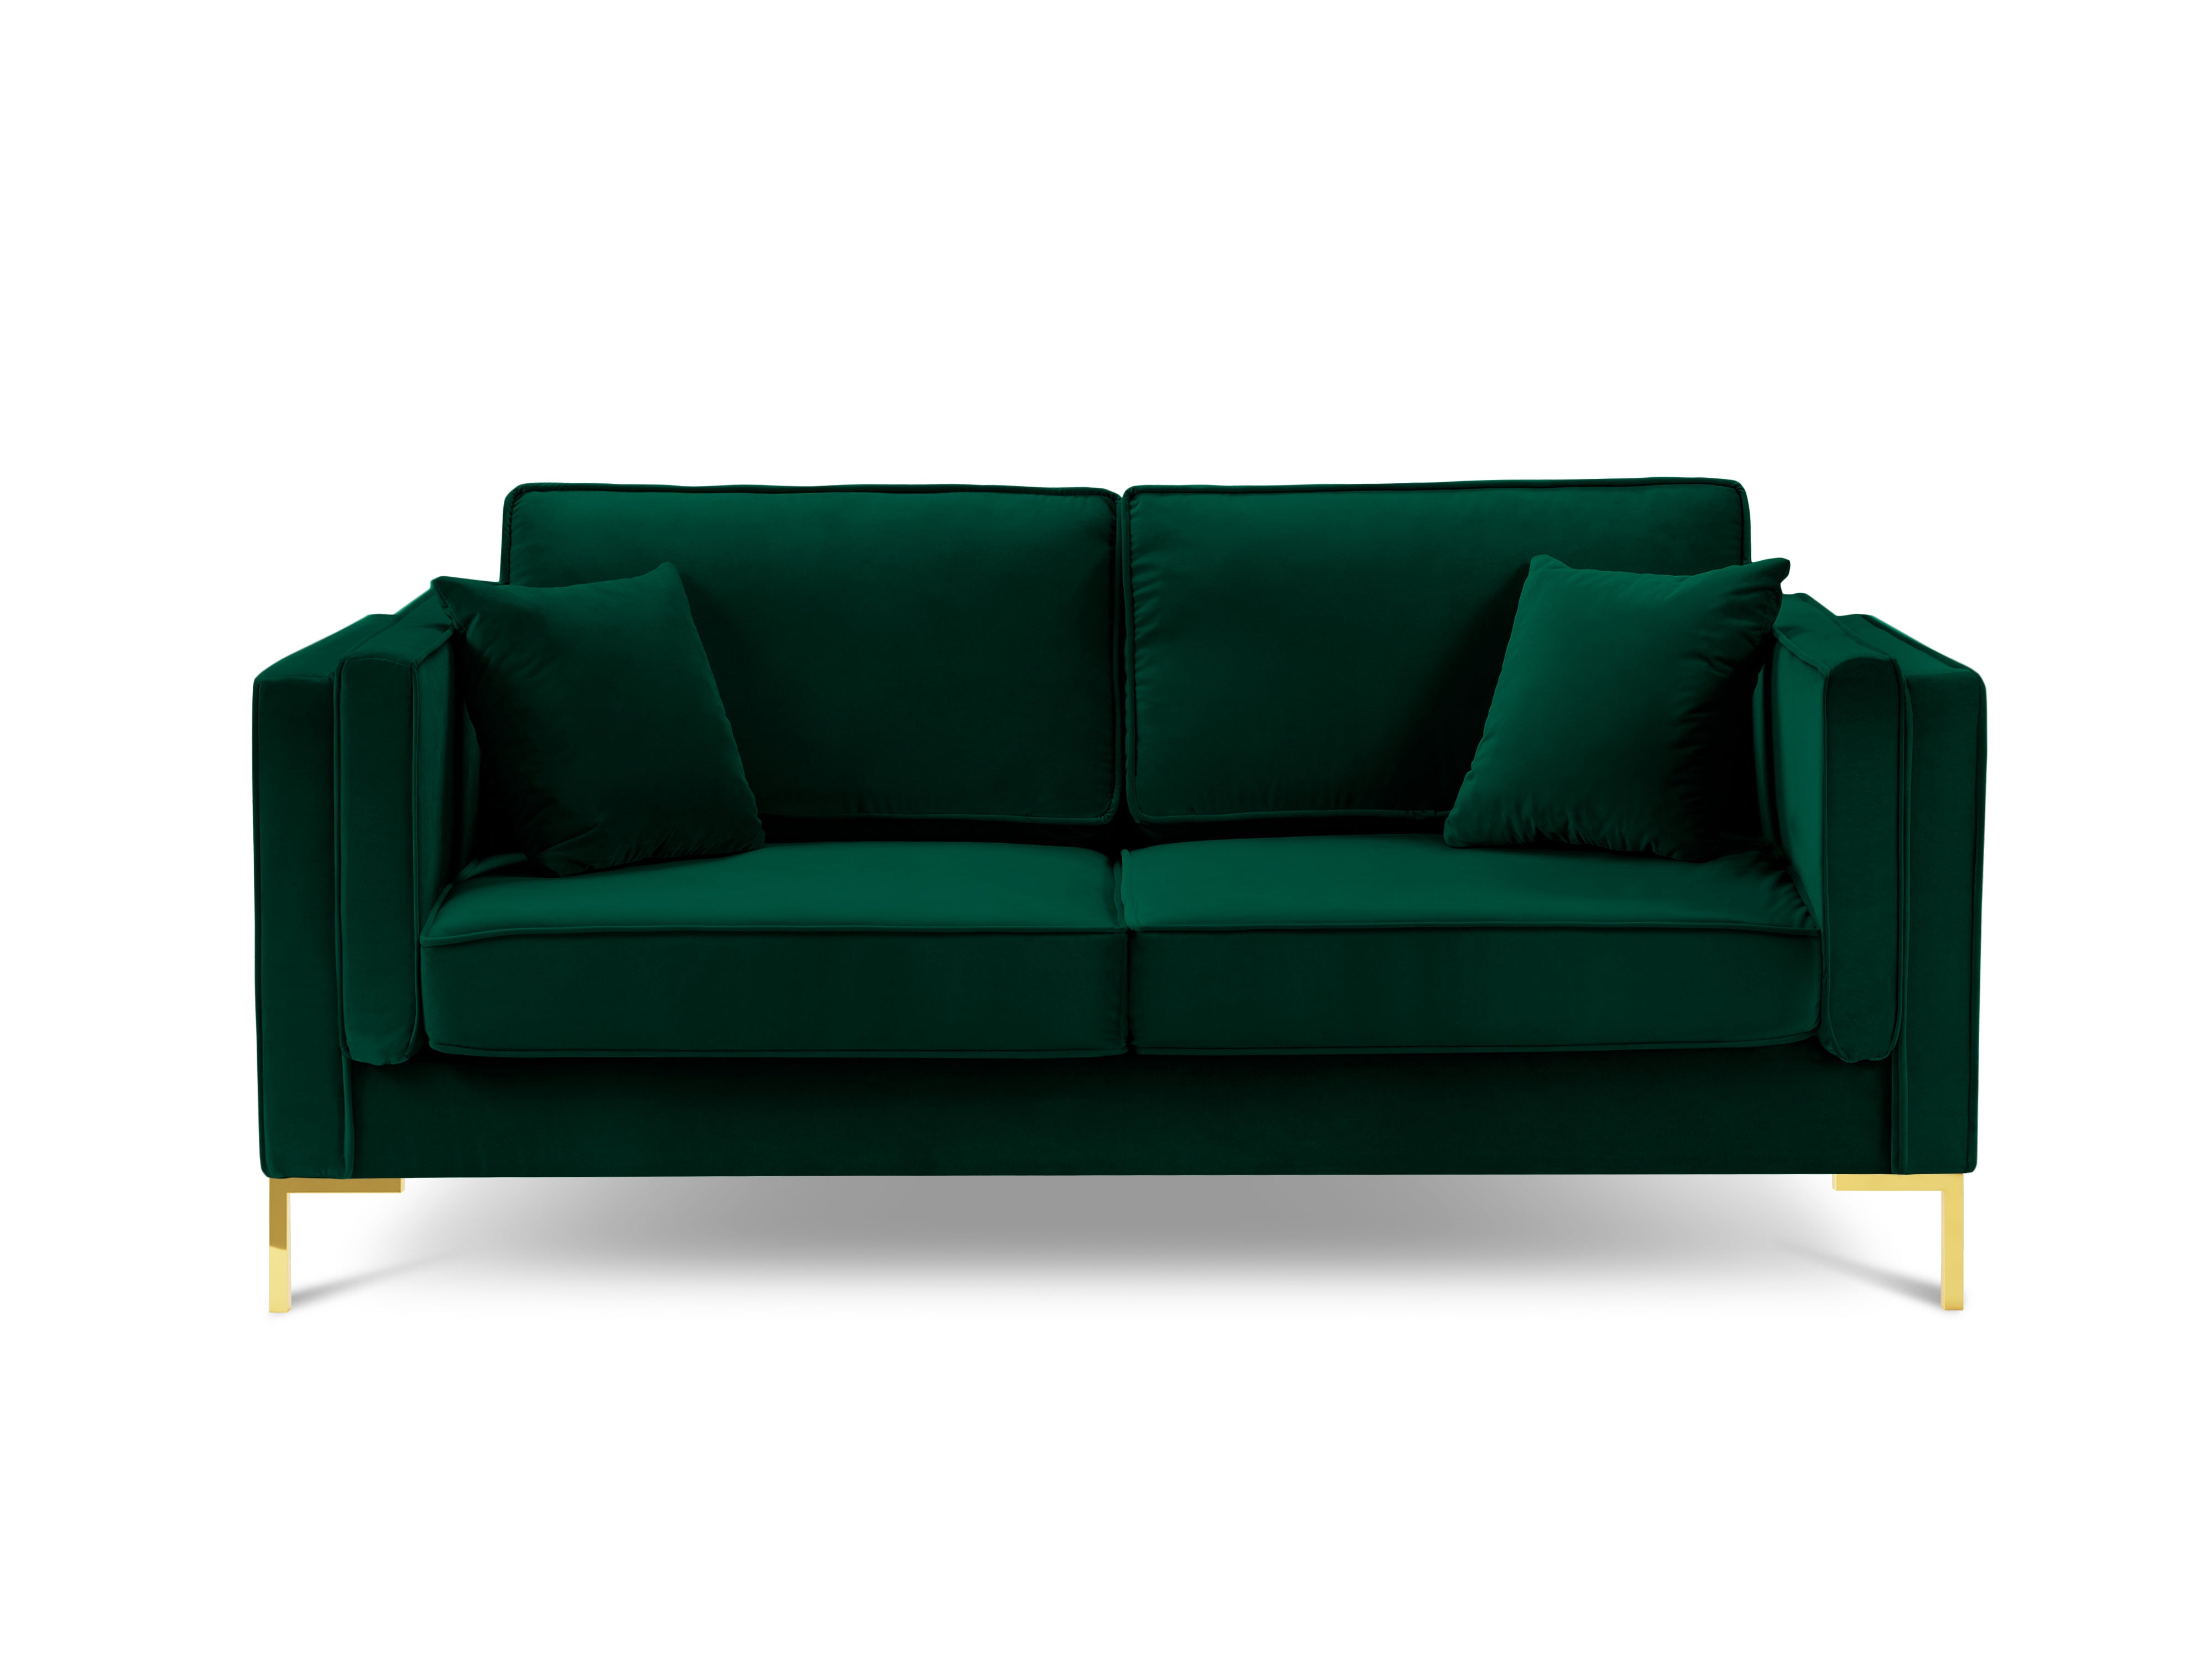 LUIS bottle green velvet 2-seater sofa with gold base